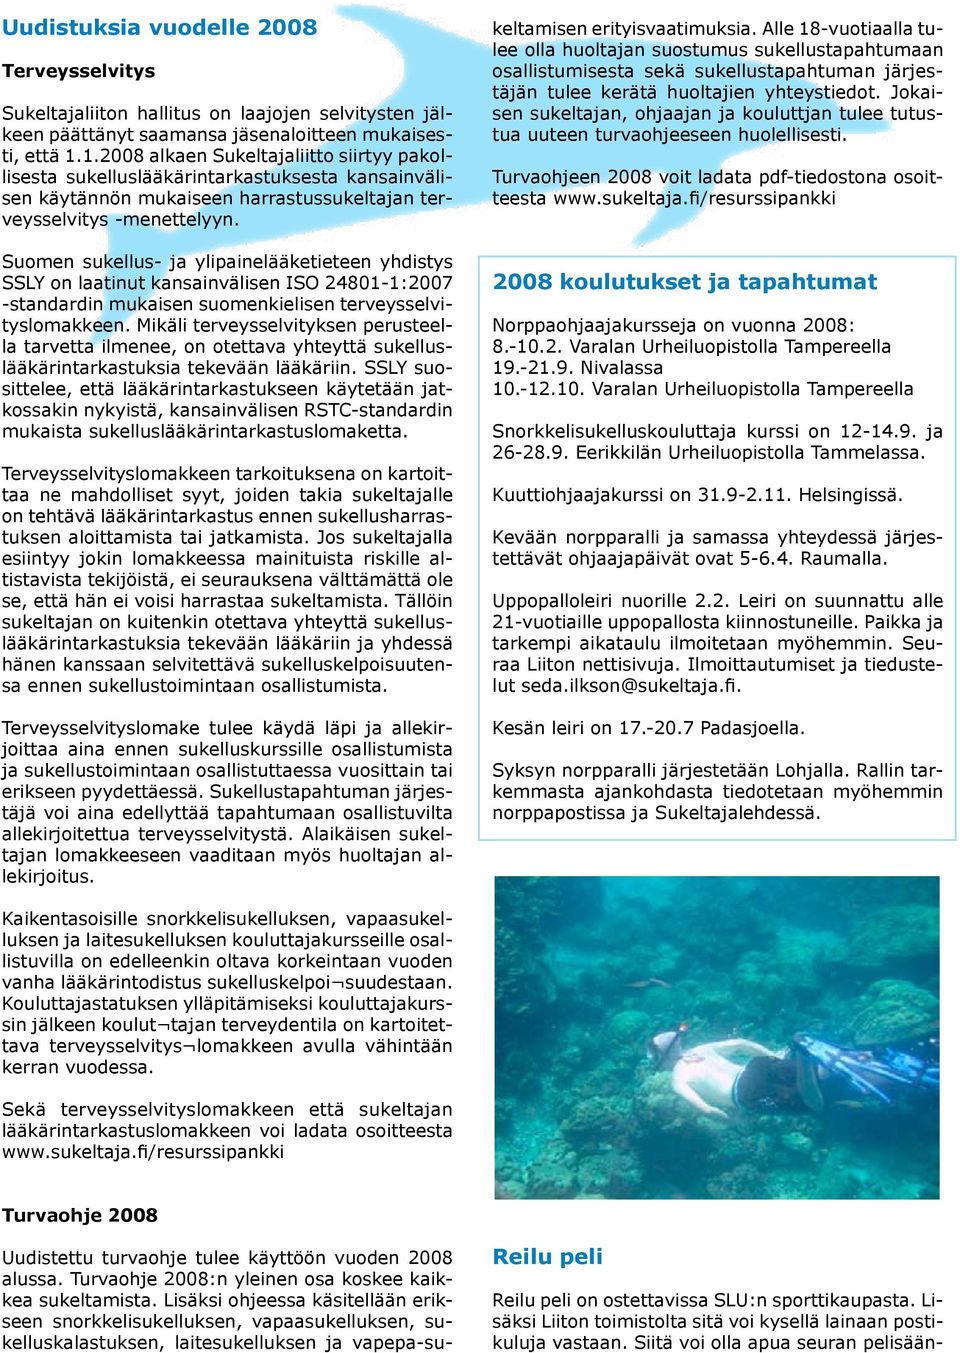 Suomen sukellus- ja ylipainelääketieteen yhdistys SSLY on laatinut kansainvälisen ISO 24801-1:2007 -standardin mukaisen suomenkielisen terveysselvityslomakkeen.